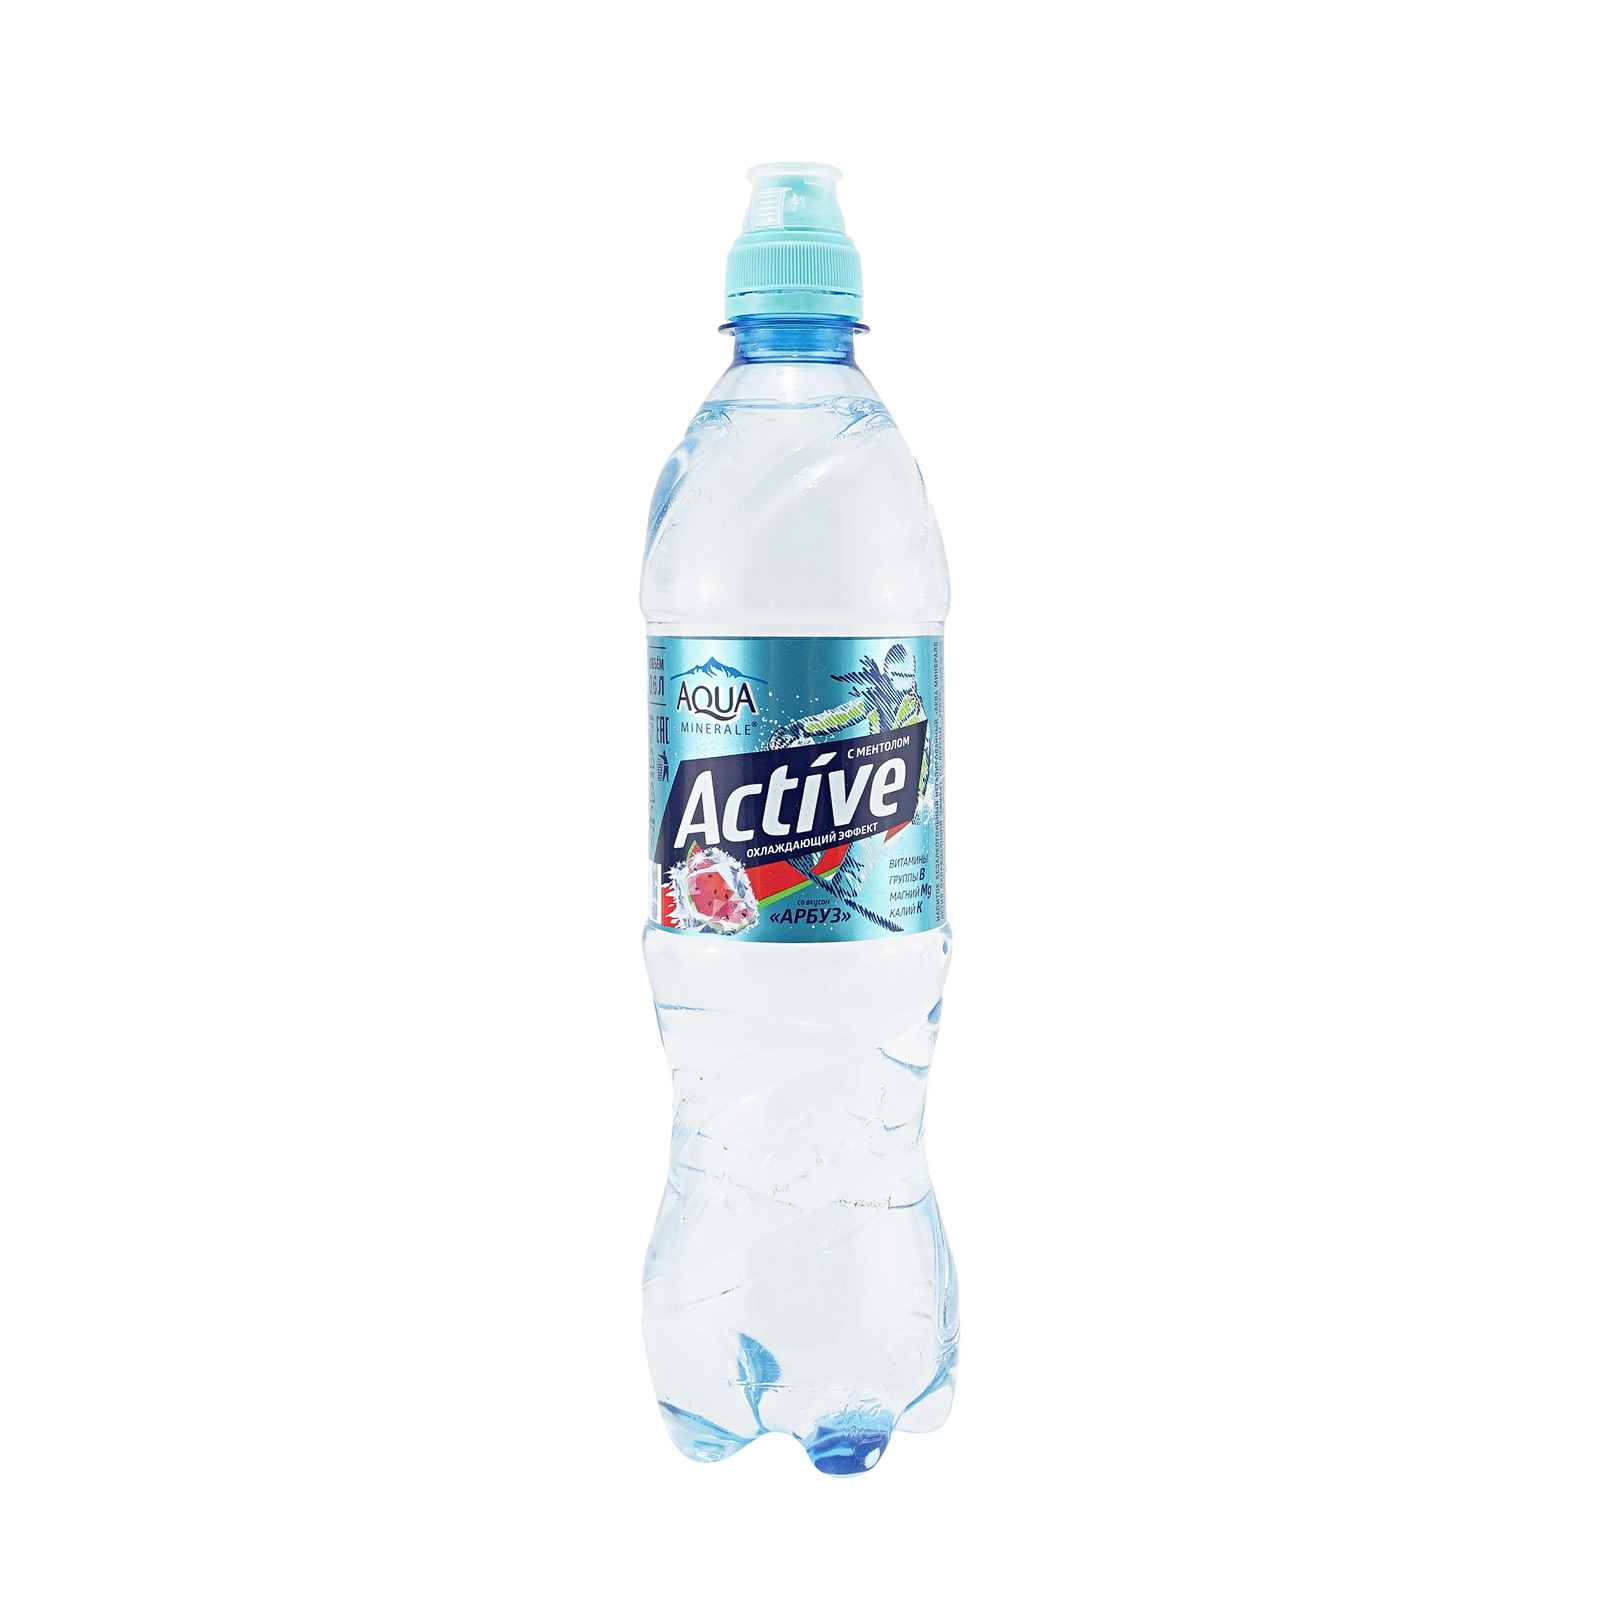 Aqua minerale Актив. Питьевая вода. Вода Aqua minerale Active. Аква Минерале Фреш.